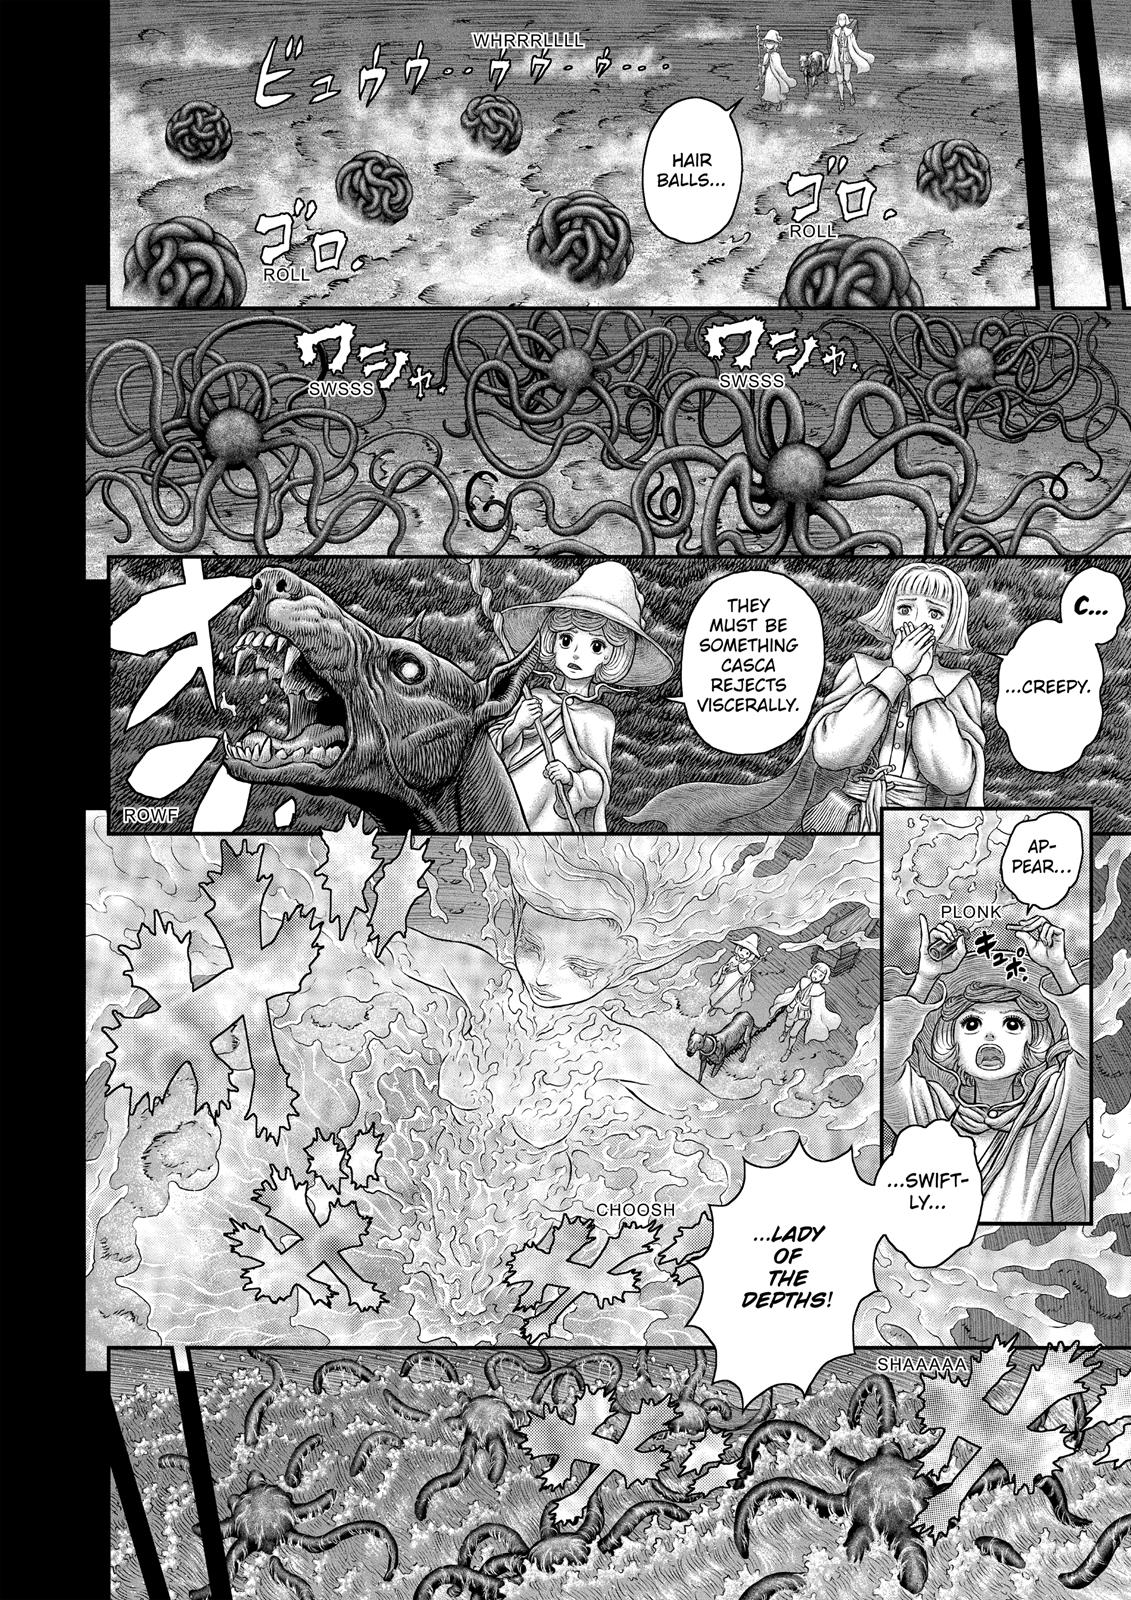 Berserk Manga Chapter 350 image 11